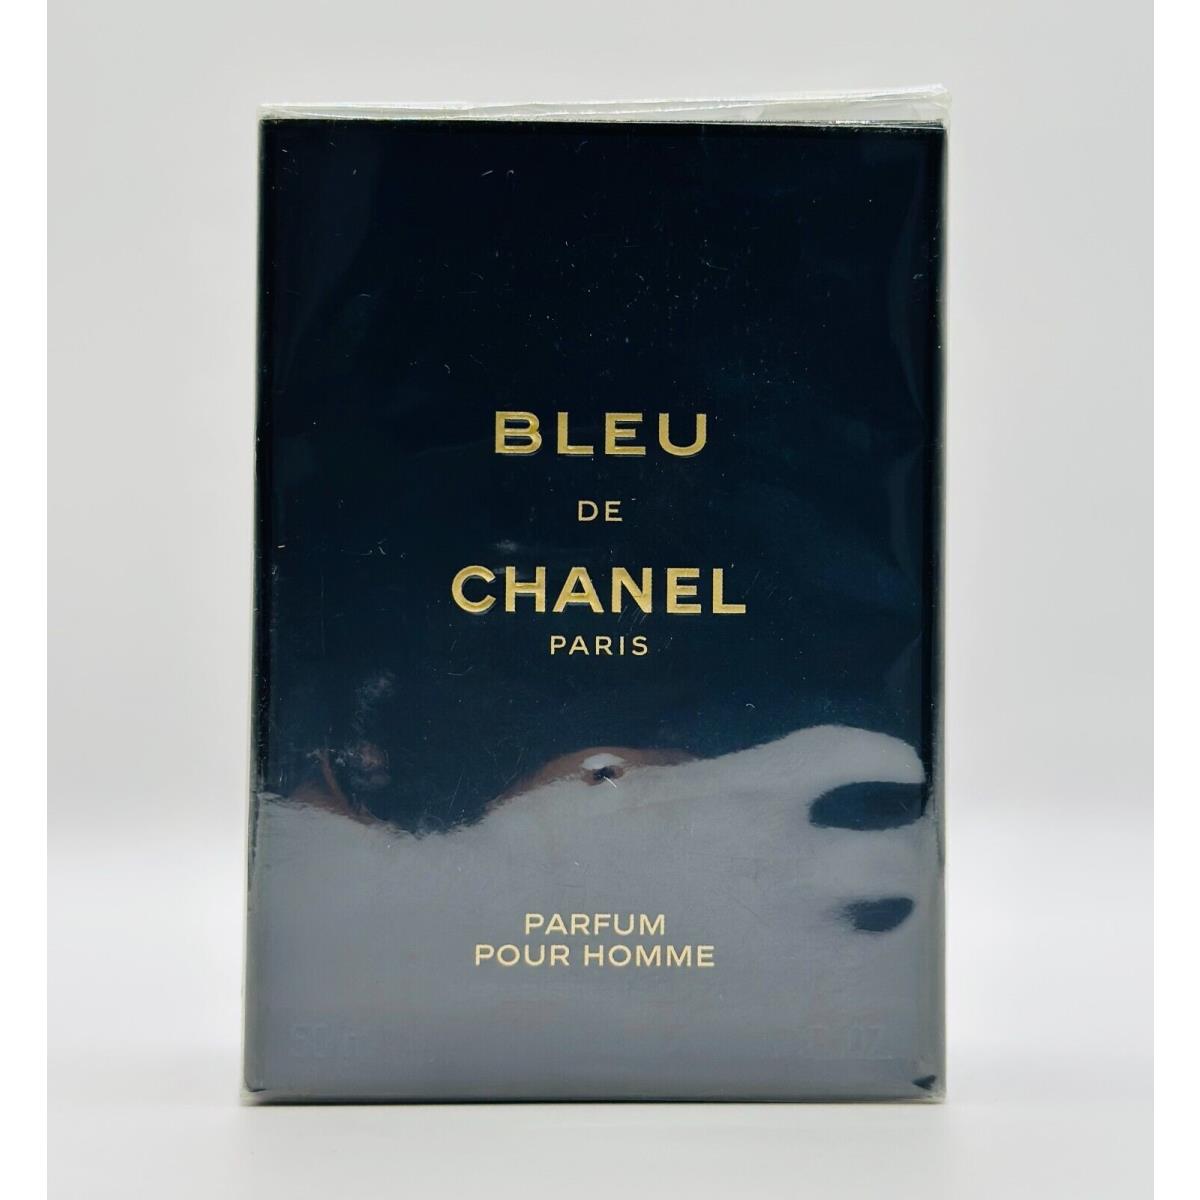 Chanel Bleu de Chanel 50ml / 1.7oz Parfum - Chanel perfume,cologne,fragrance ,parfum 